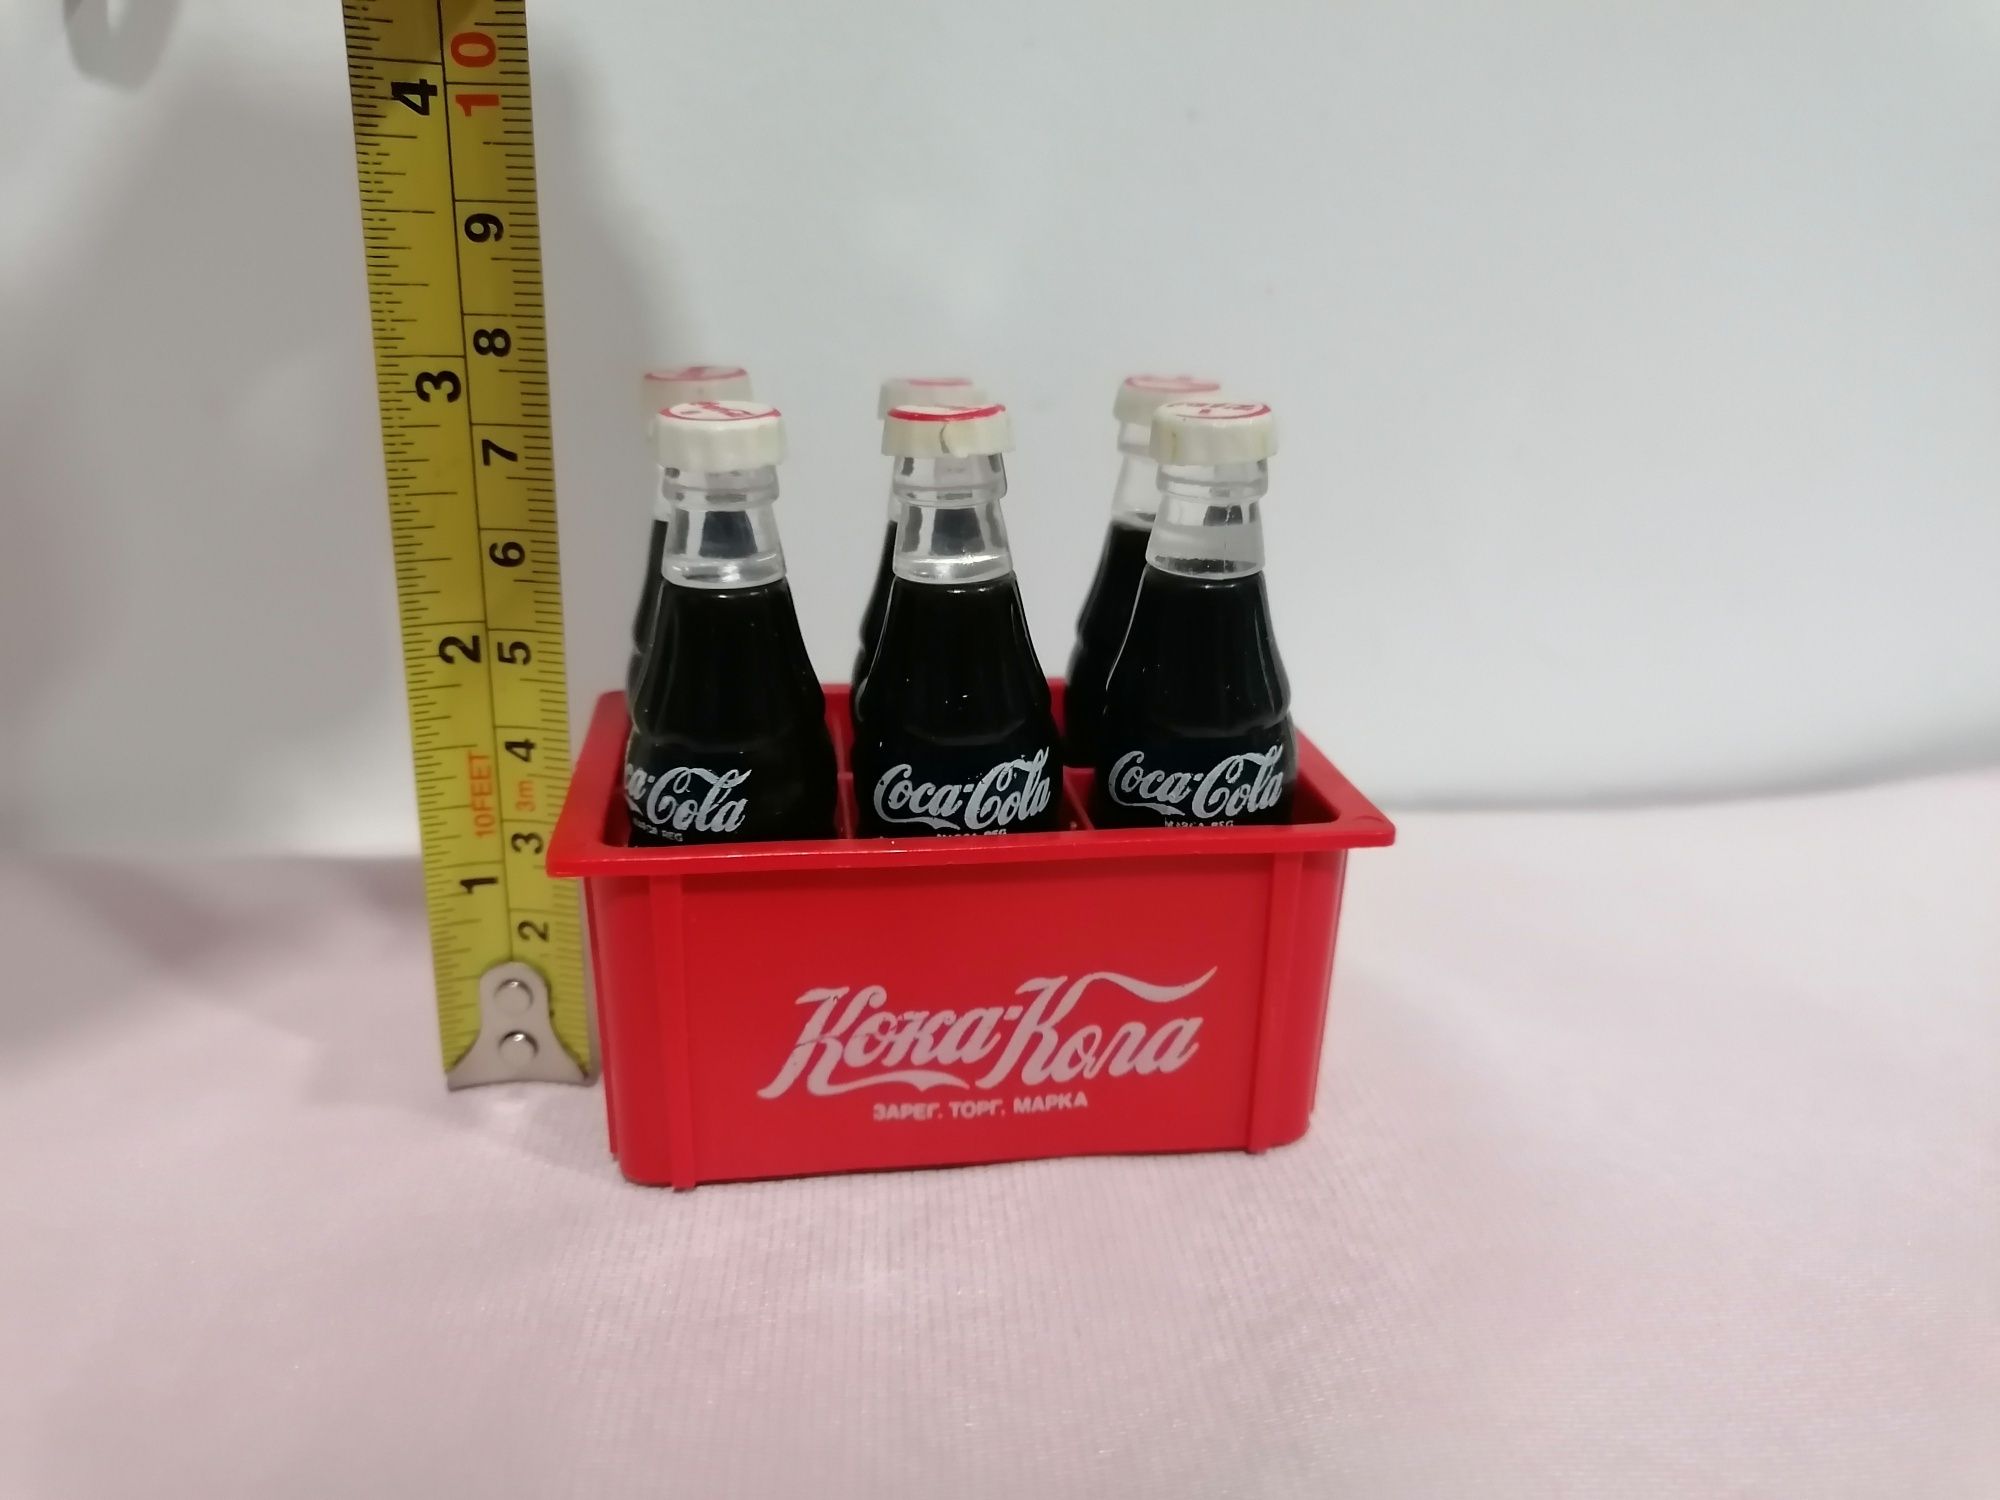 Grade miniatura com 6 garrafinhas em plástico publicidade da Coca-Cola